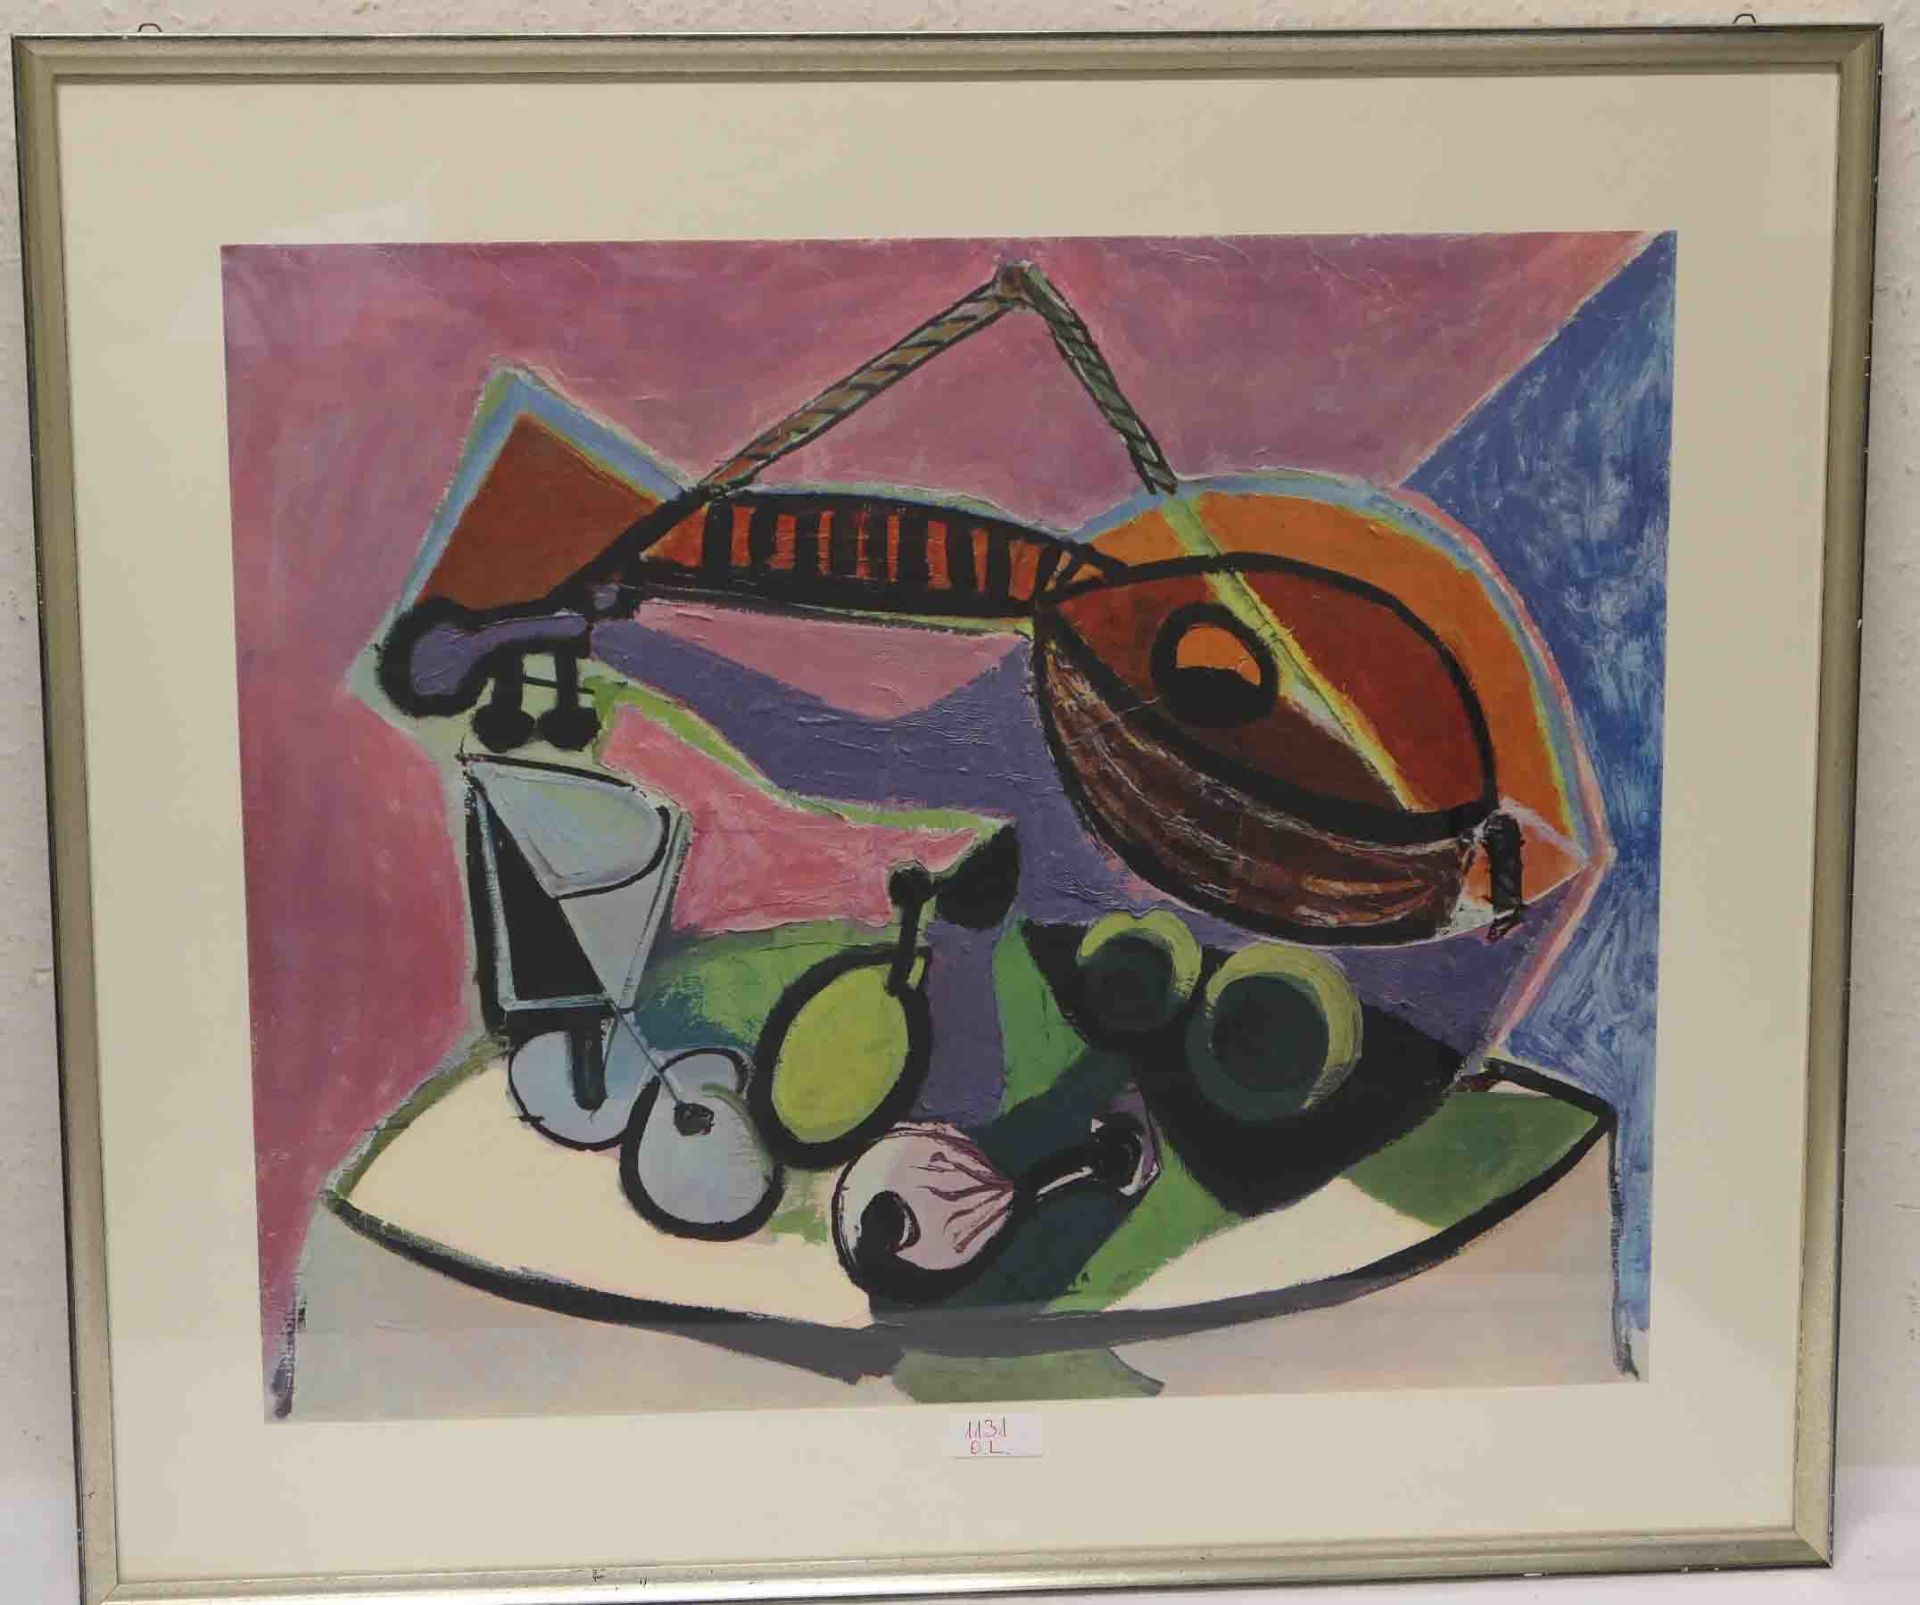 Picasso: "Stillleben"